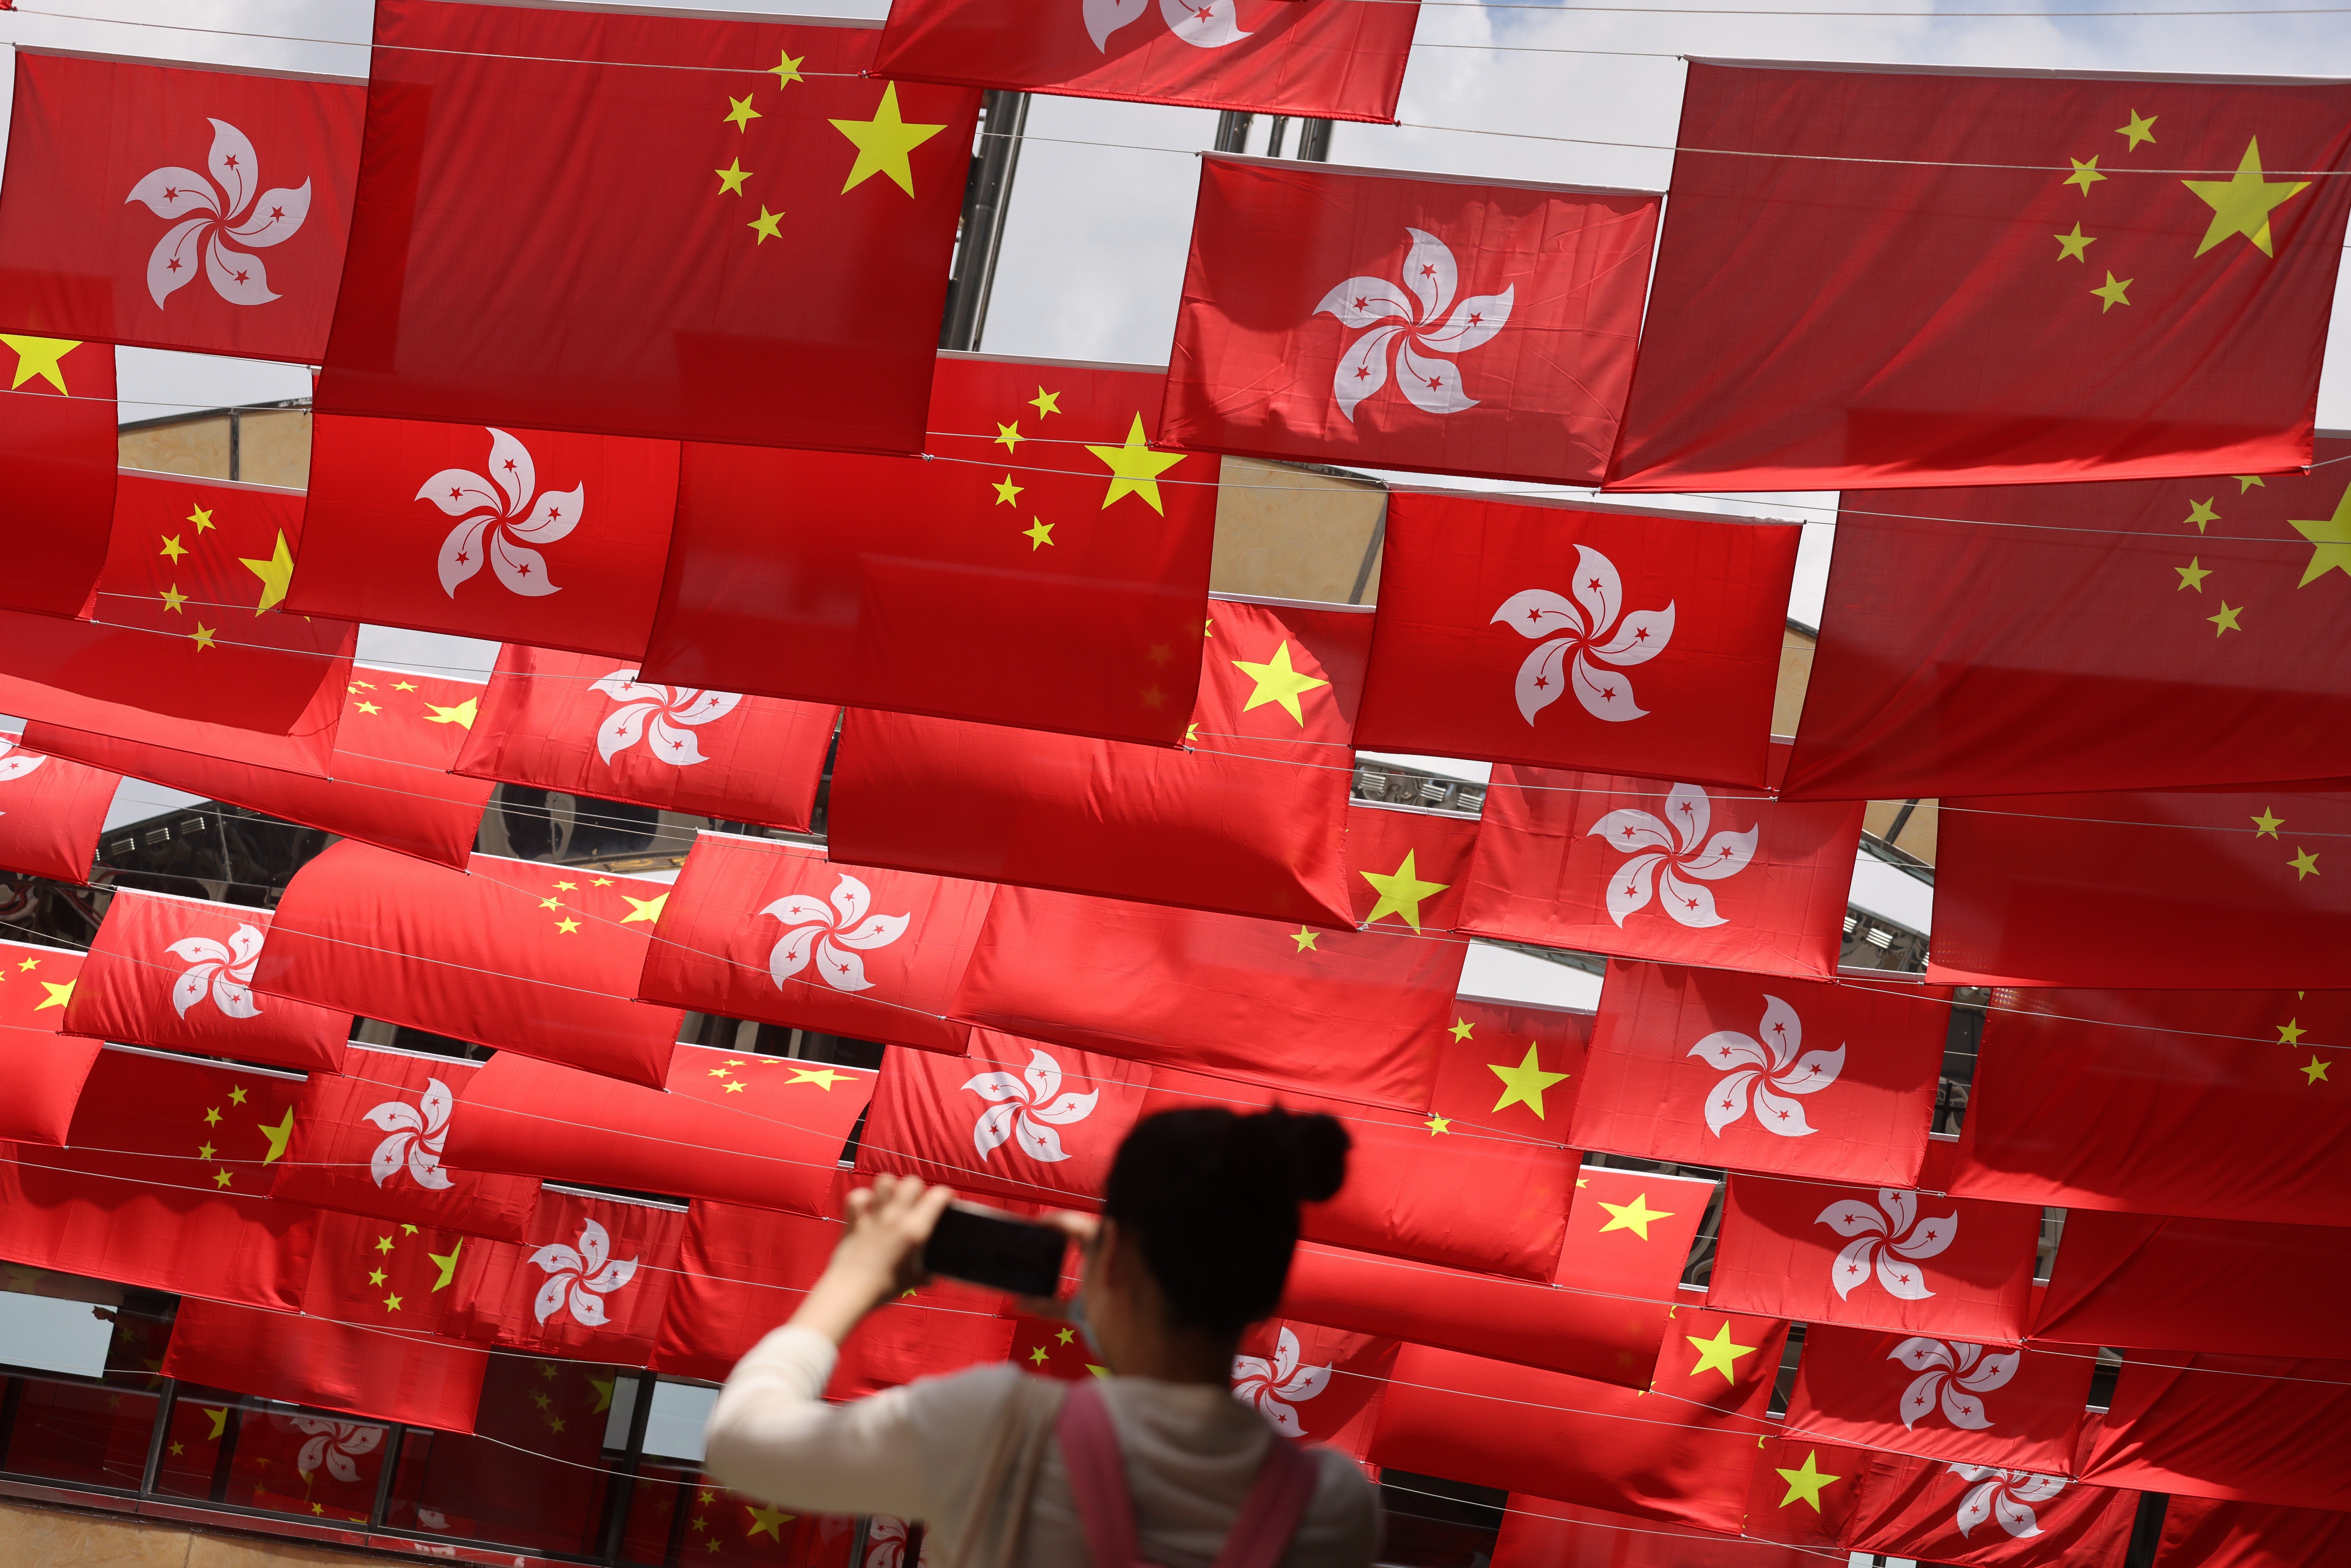 National and city flags in Hong Kong’s Tsim Sha Tsui marking the 24th anniversary of the handover. Photo: May Tse